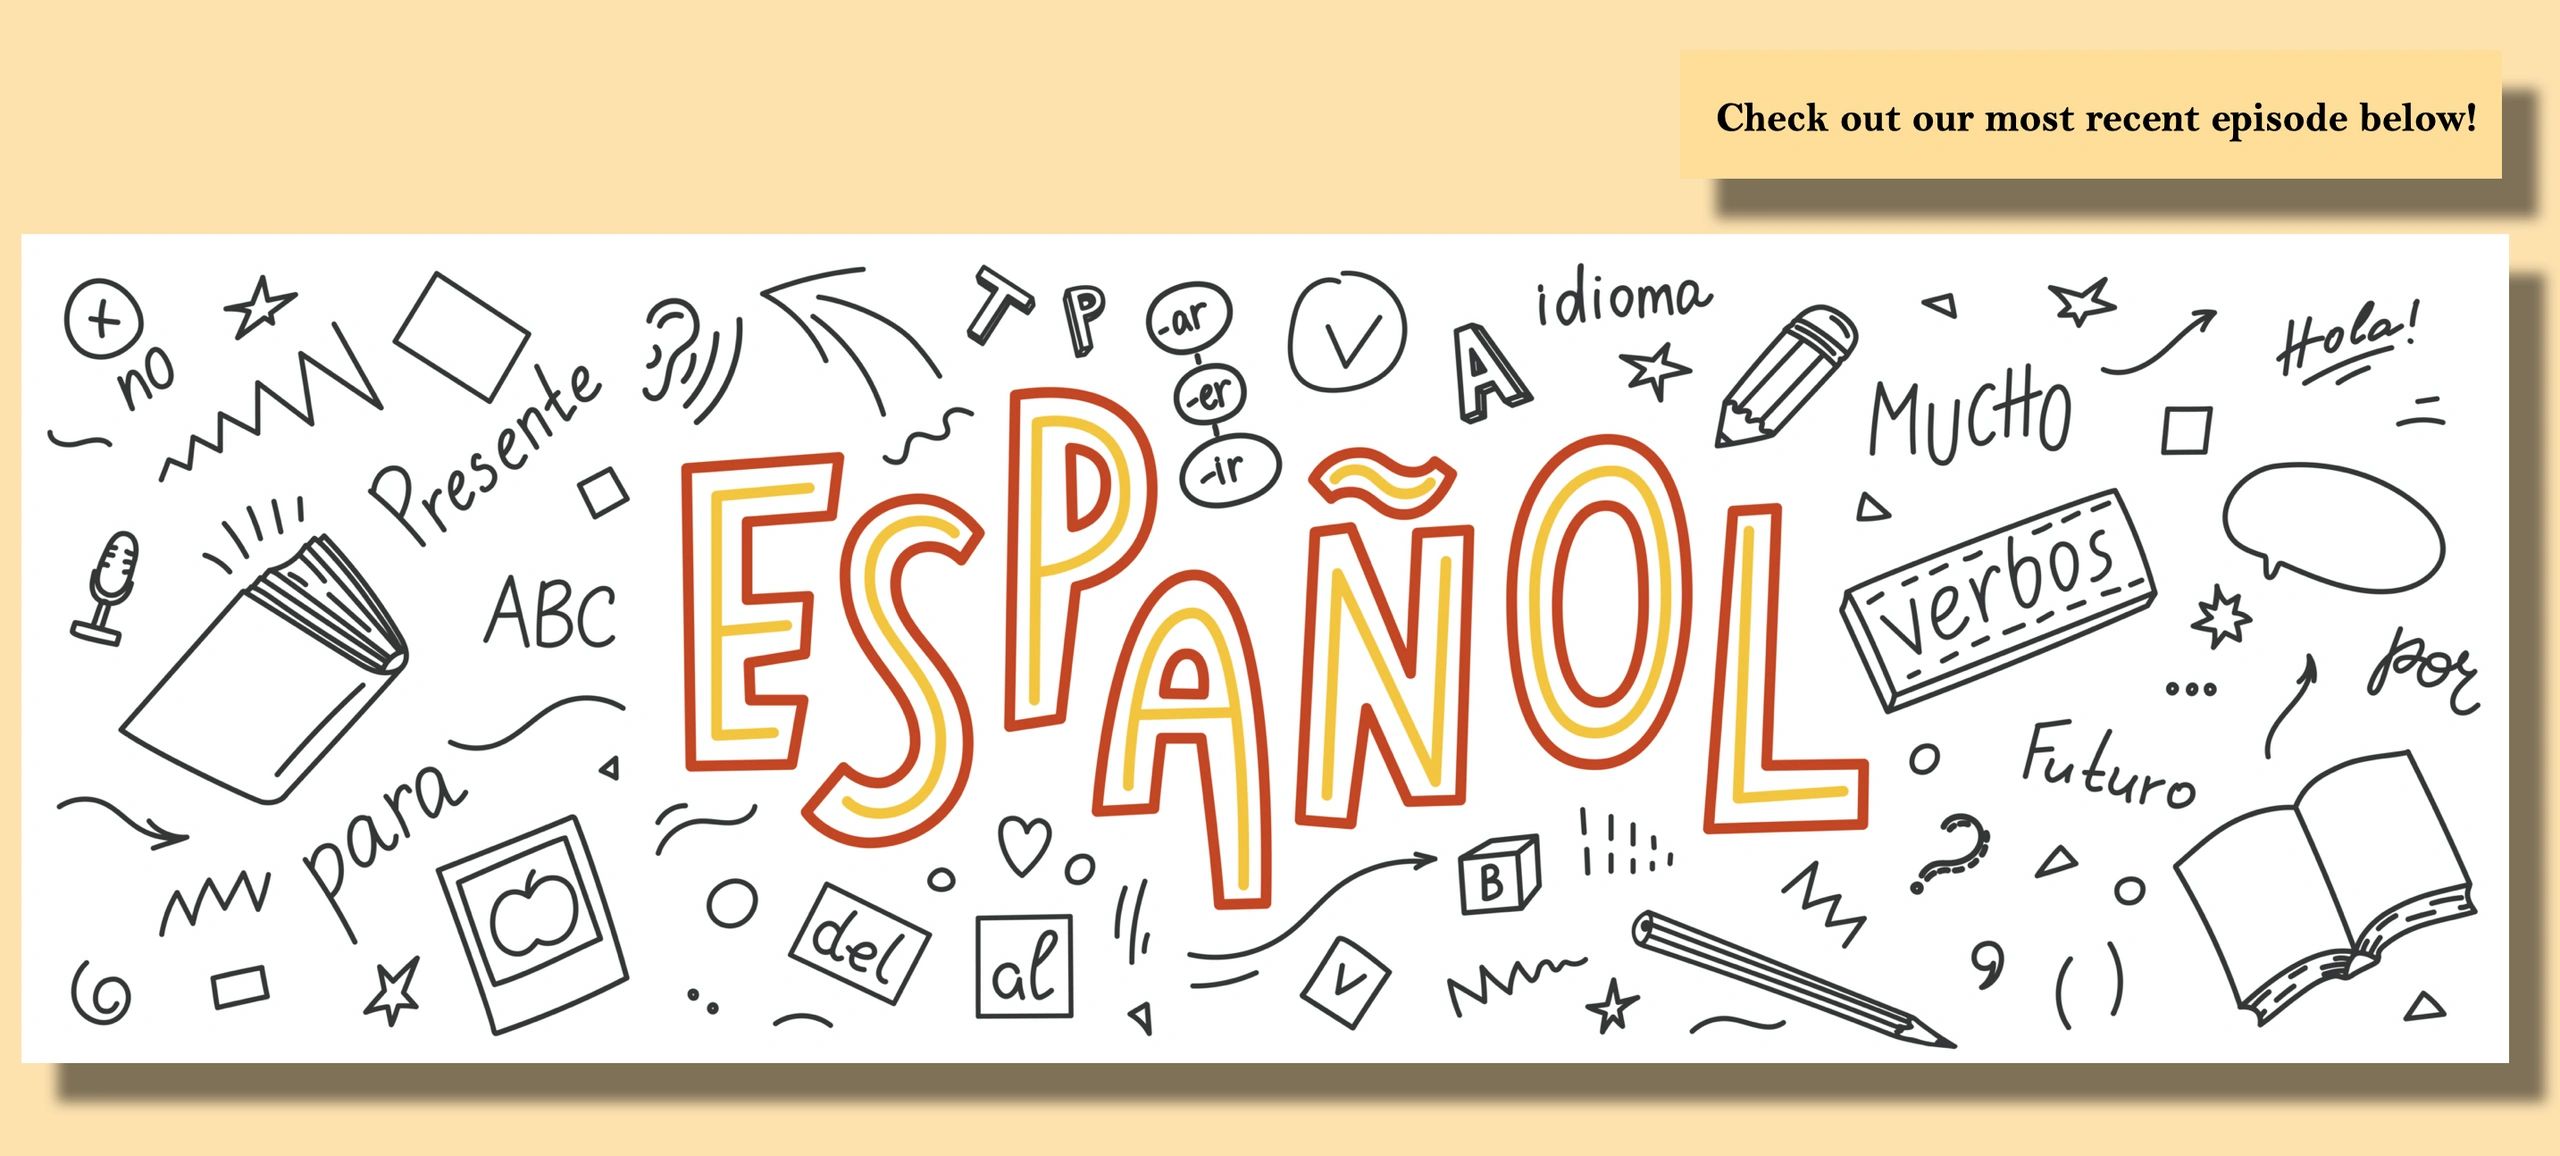 В школе испанский язык изучают 90 учащихся. Espanol. Испанский язык чб. Надпись испанский язык. Испанский язык картинки для оформления текста.